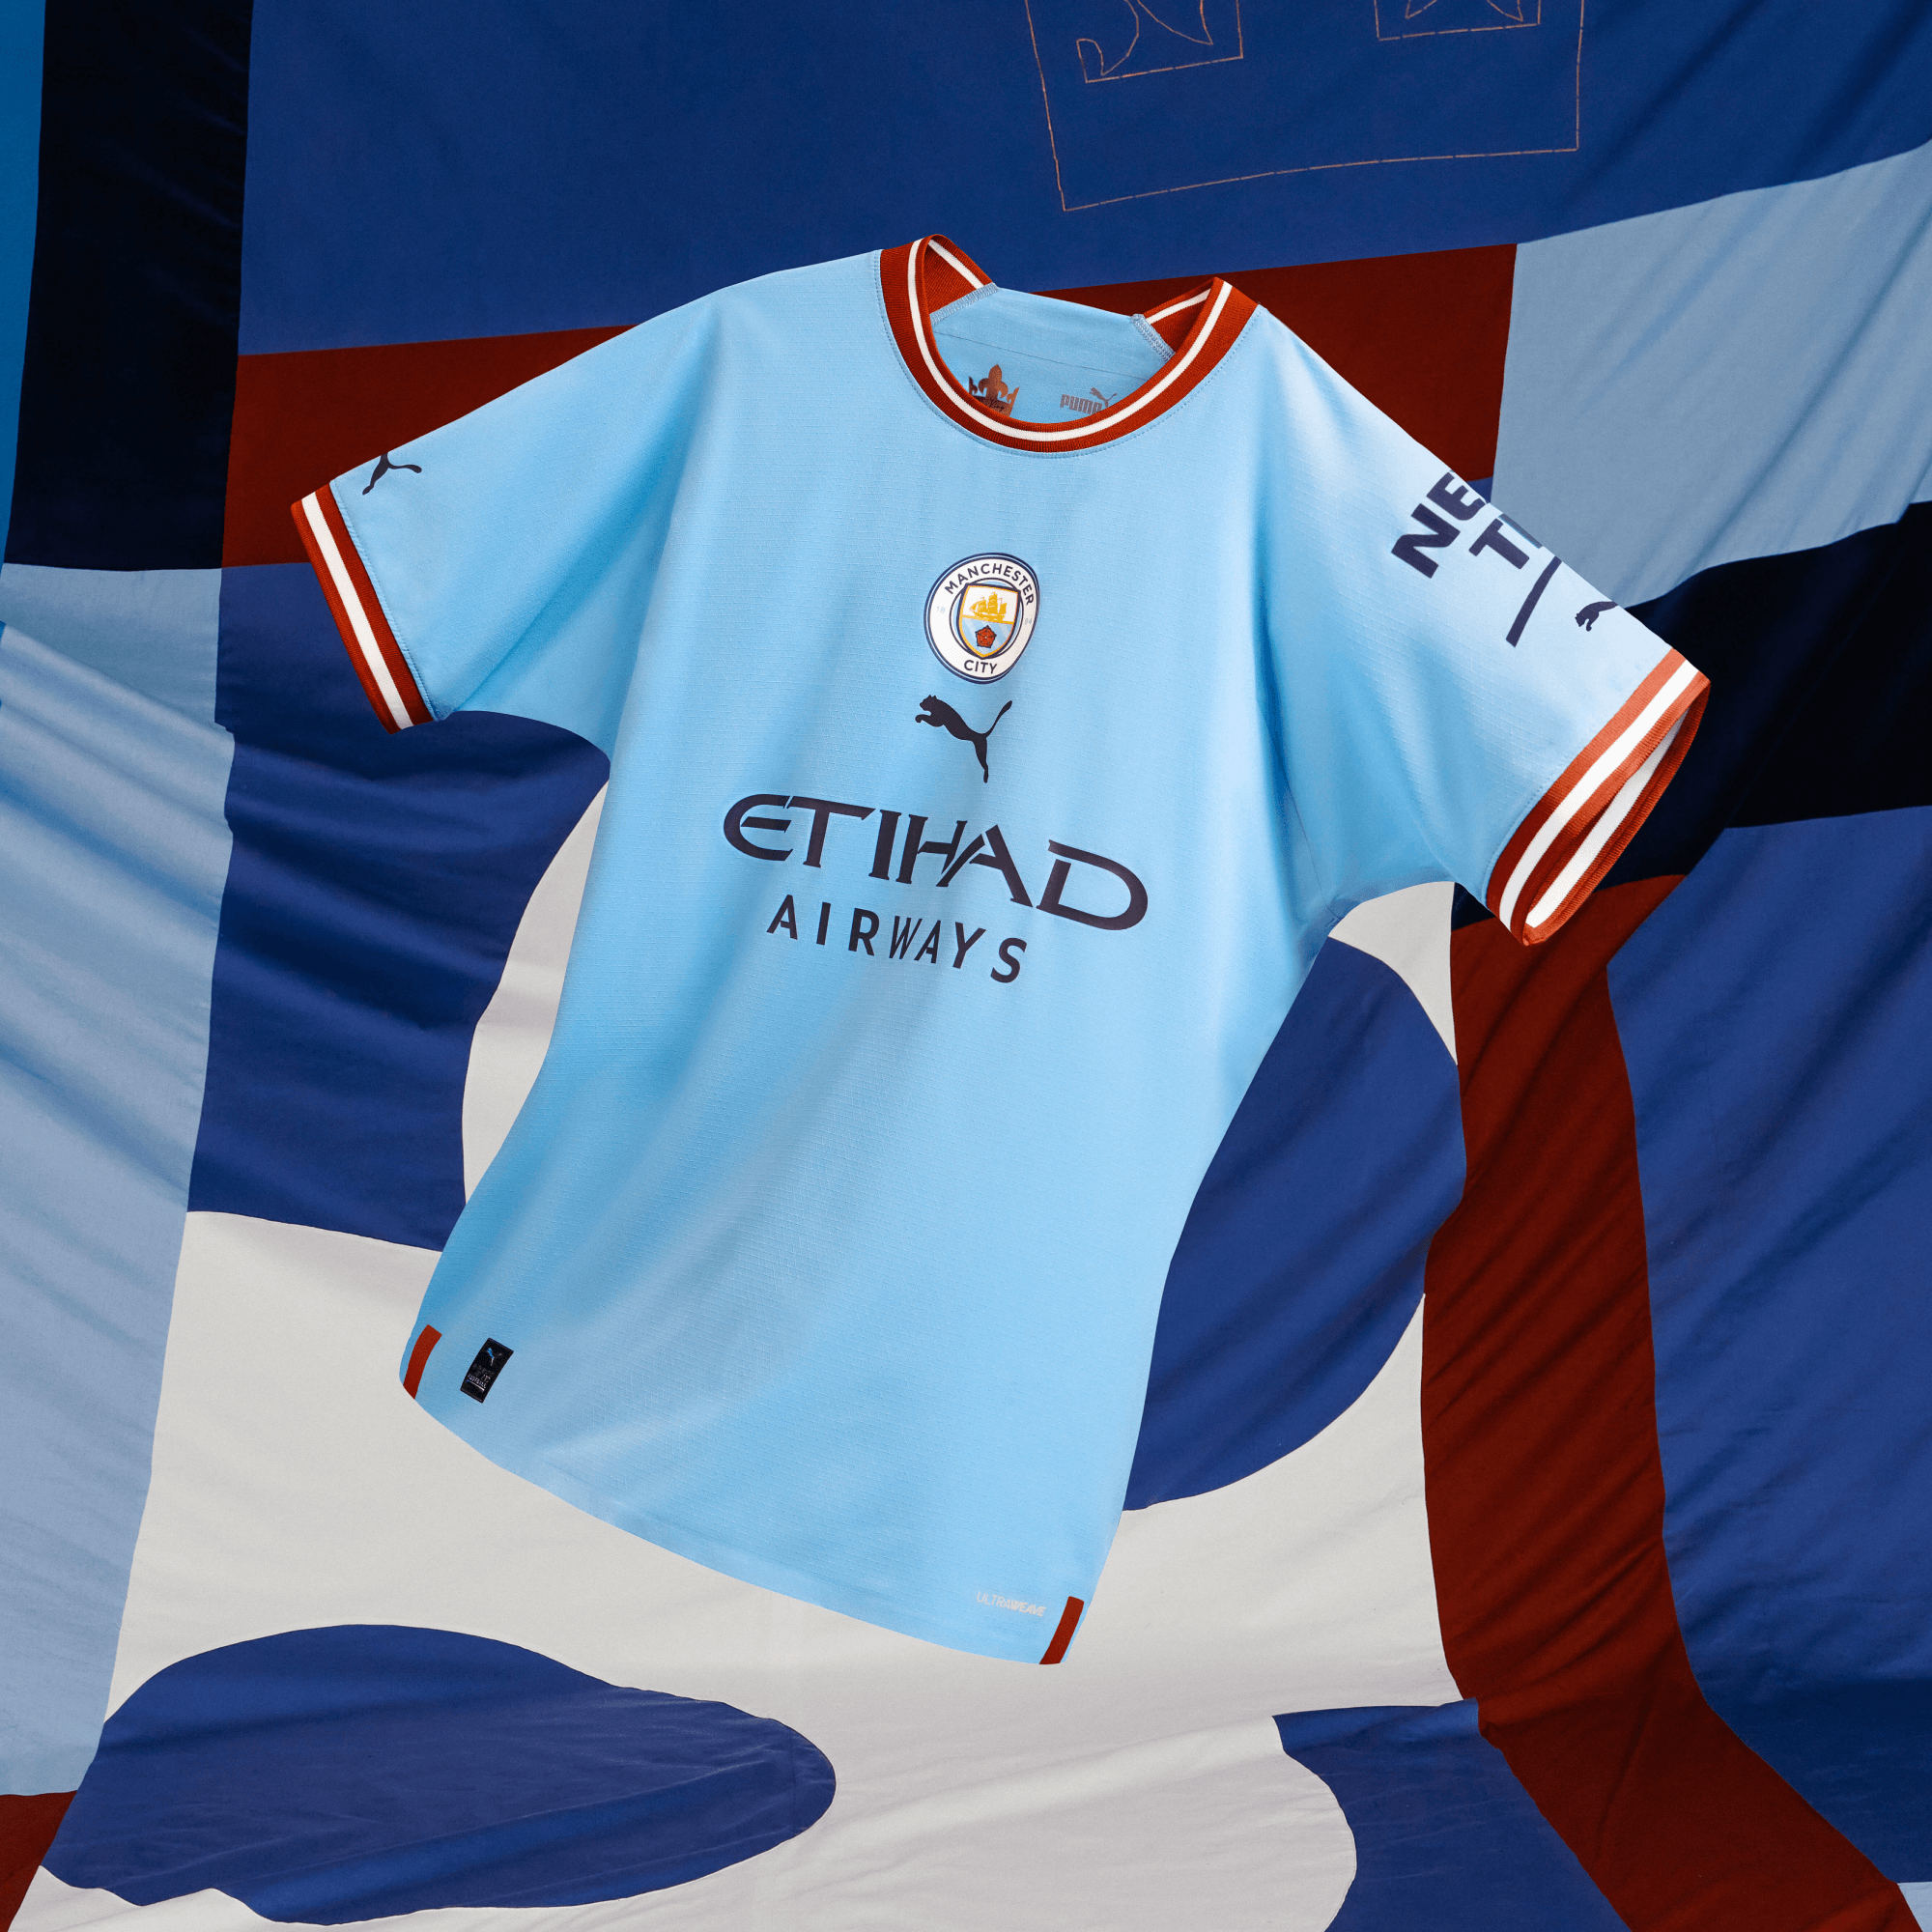 Manchester City Football Club Official Soccer Gift Kids Crest T-Shirt 